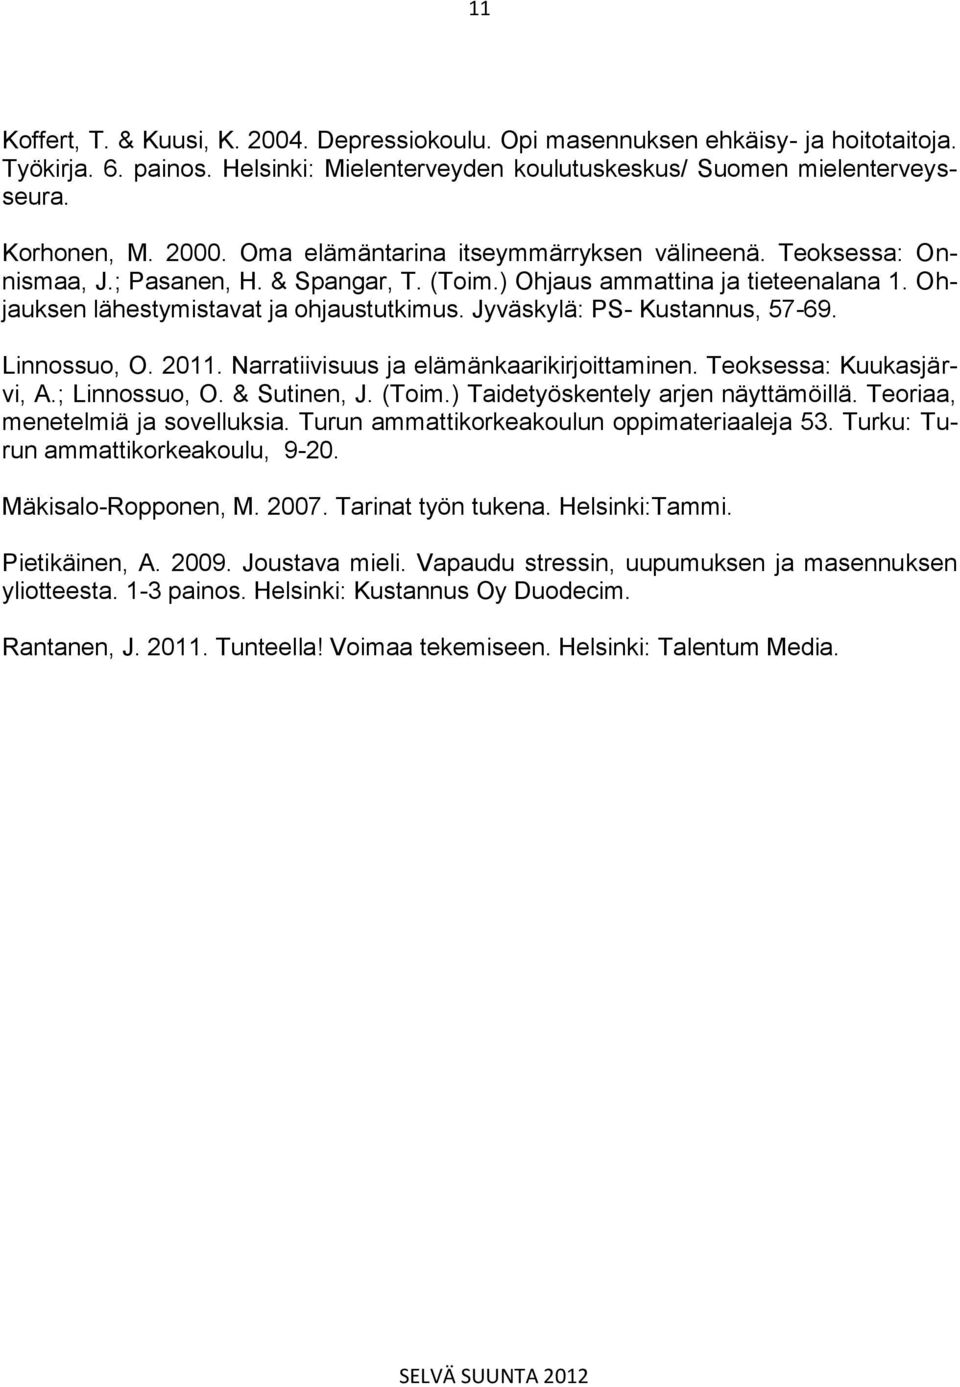 Jyväskylä: PS- Kustannus, 57-69. Linnossuo, O. 2011. Narratiivisuus ja elämänkaarikirjoittaminen. Teoksessa: Kuukasjärvi, A.; Linnossuo, O. & Sutinen, J. (Toim.) Taidetyöskentely arjen näyttämöillä.